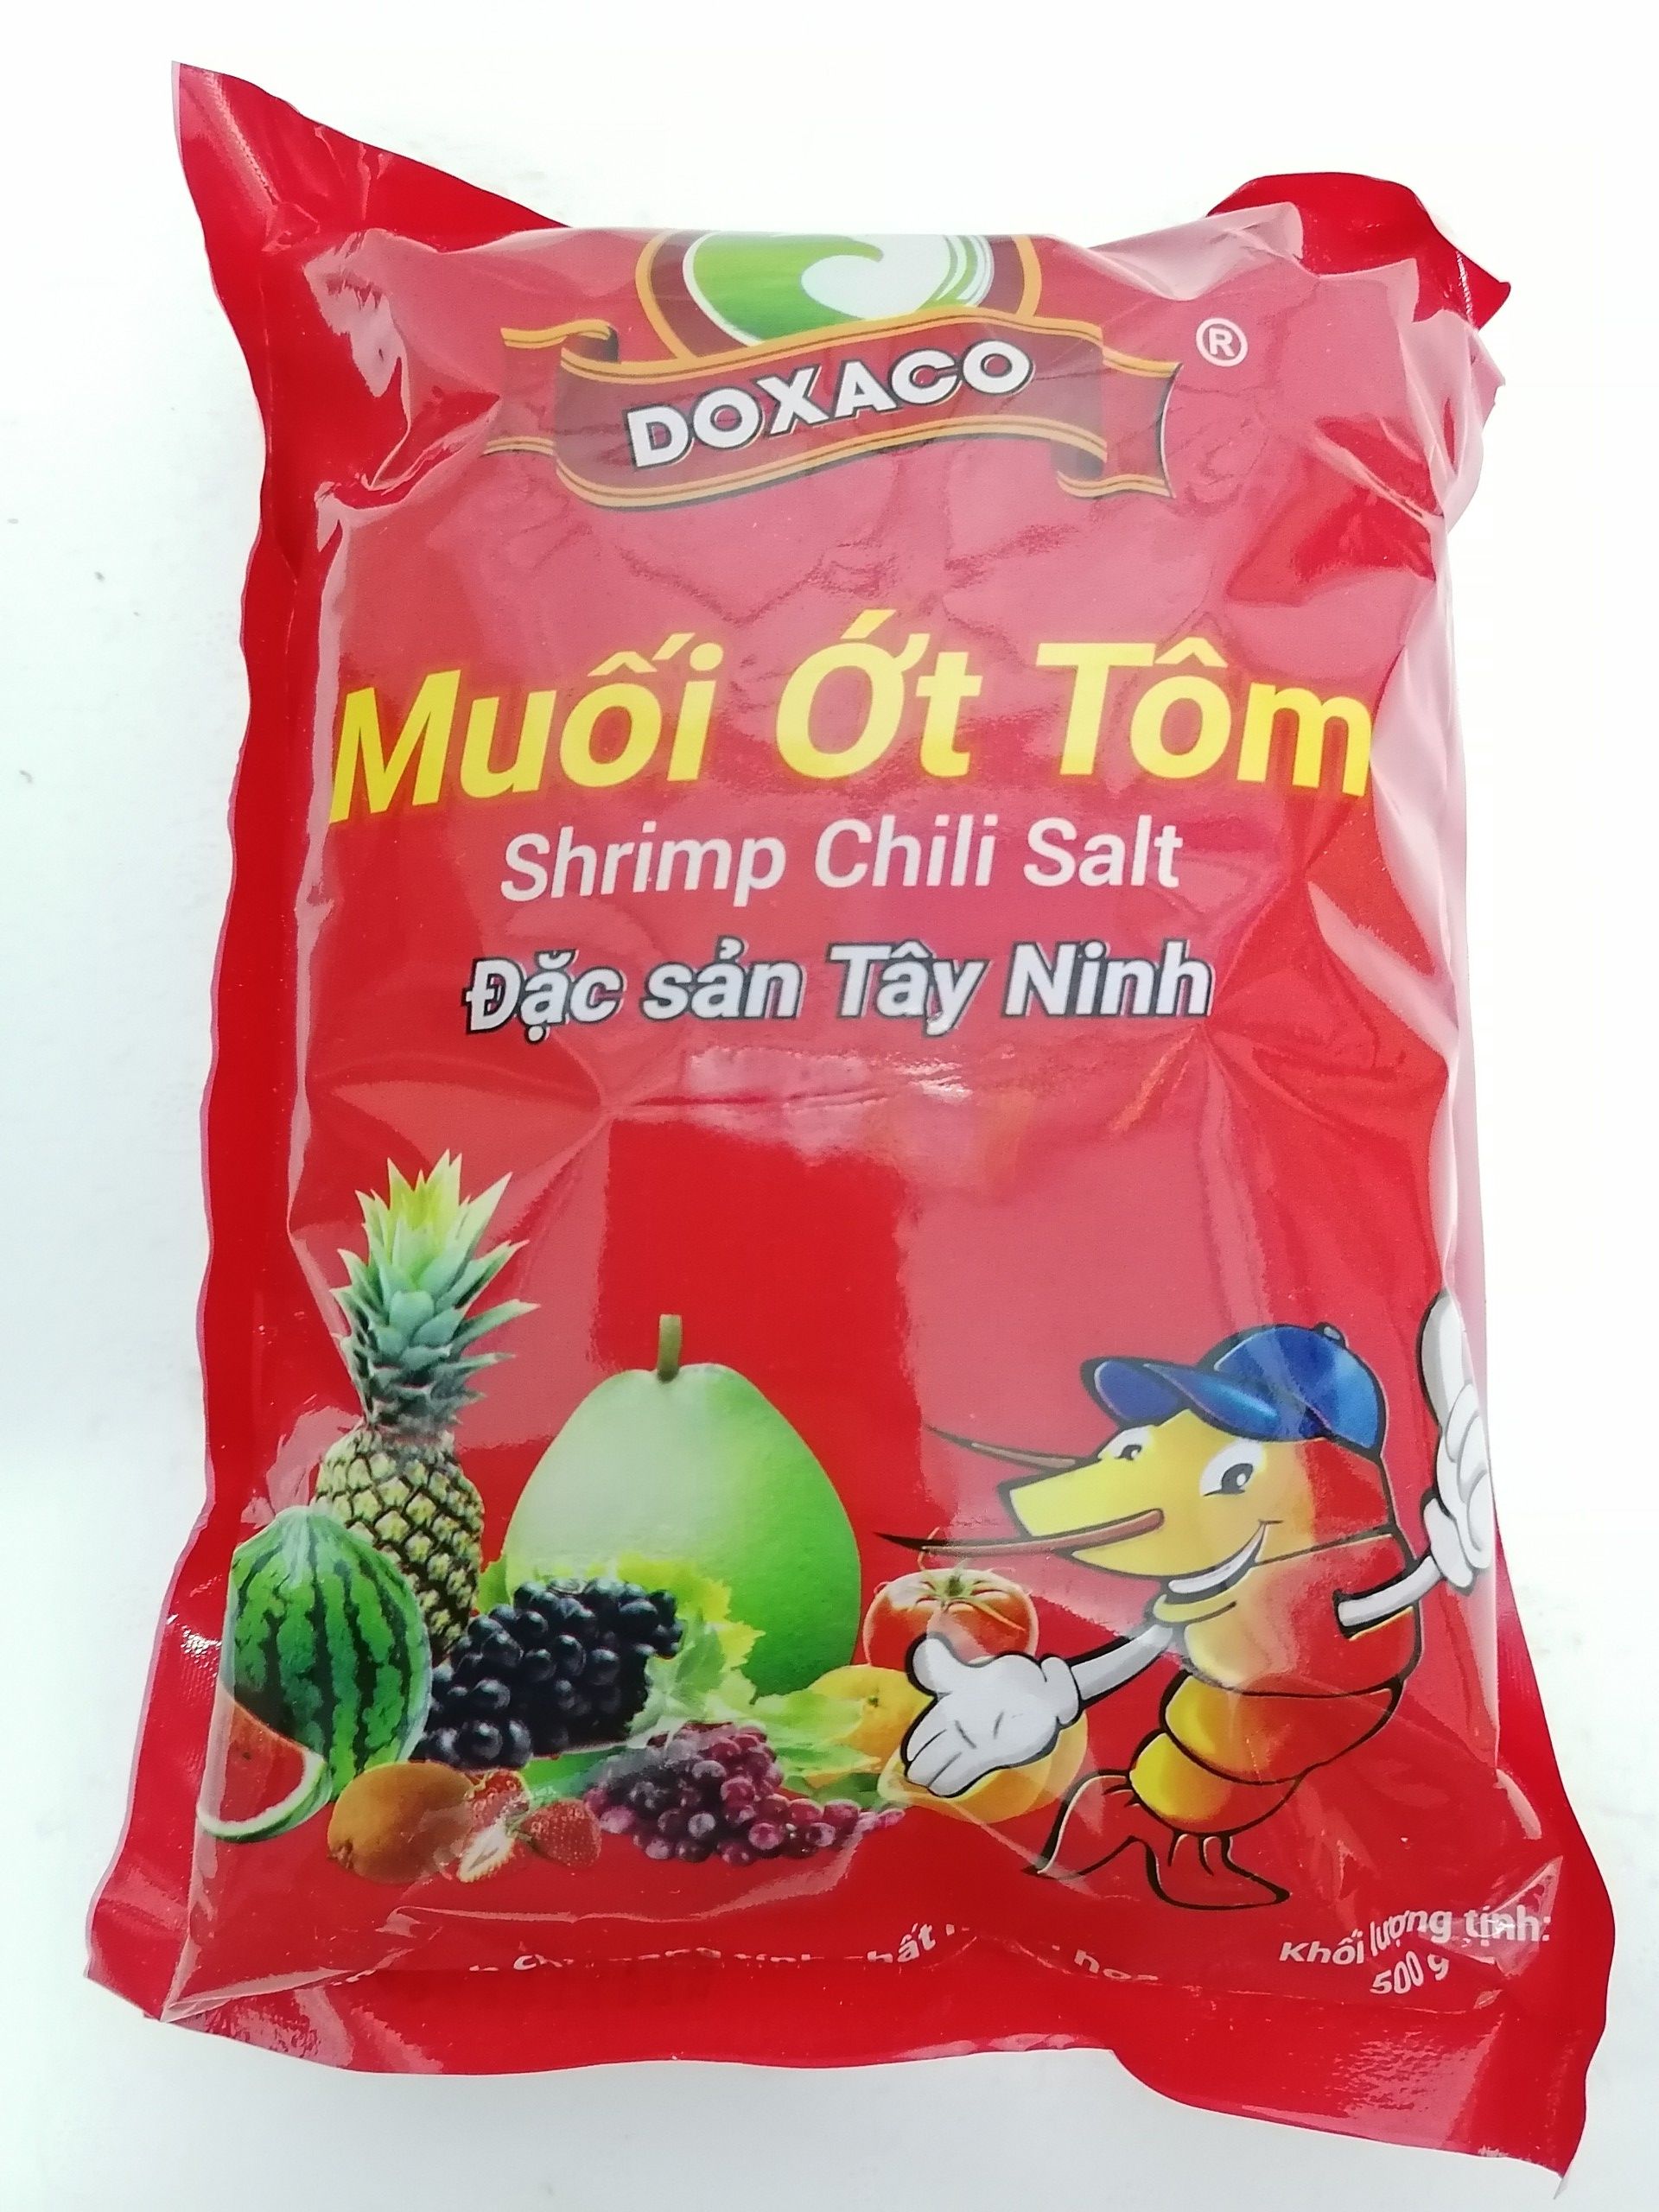 GÓI LỚN 500g Muối ớt tôm Tây Ninh VN DOXACO Shrimp Chili Salt bph-hk